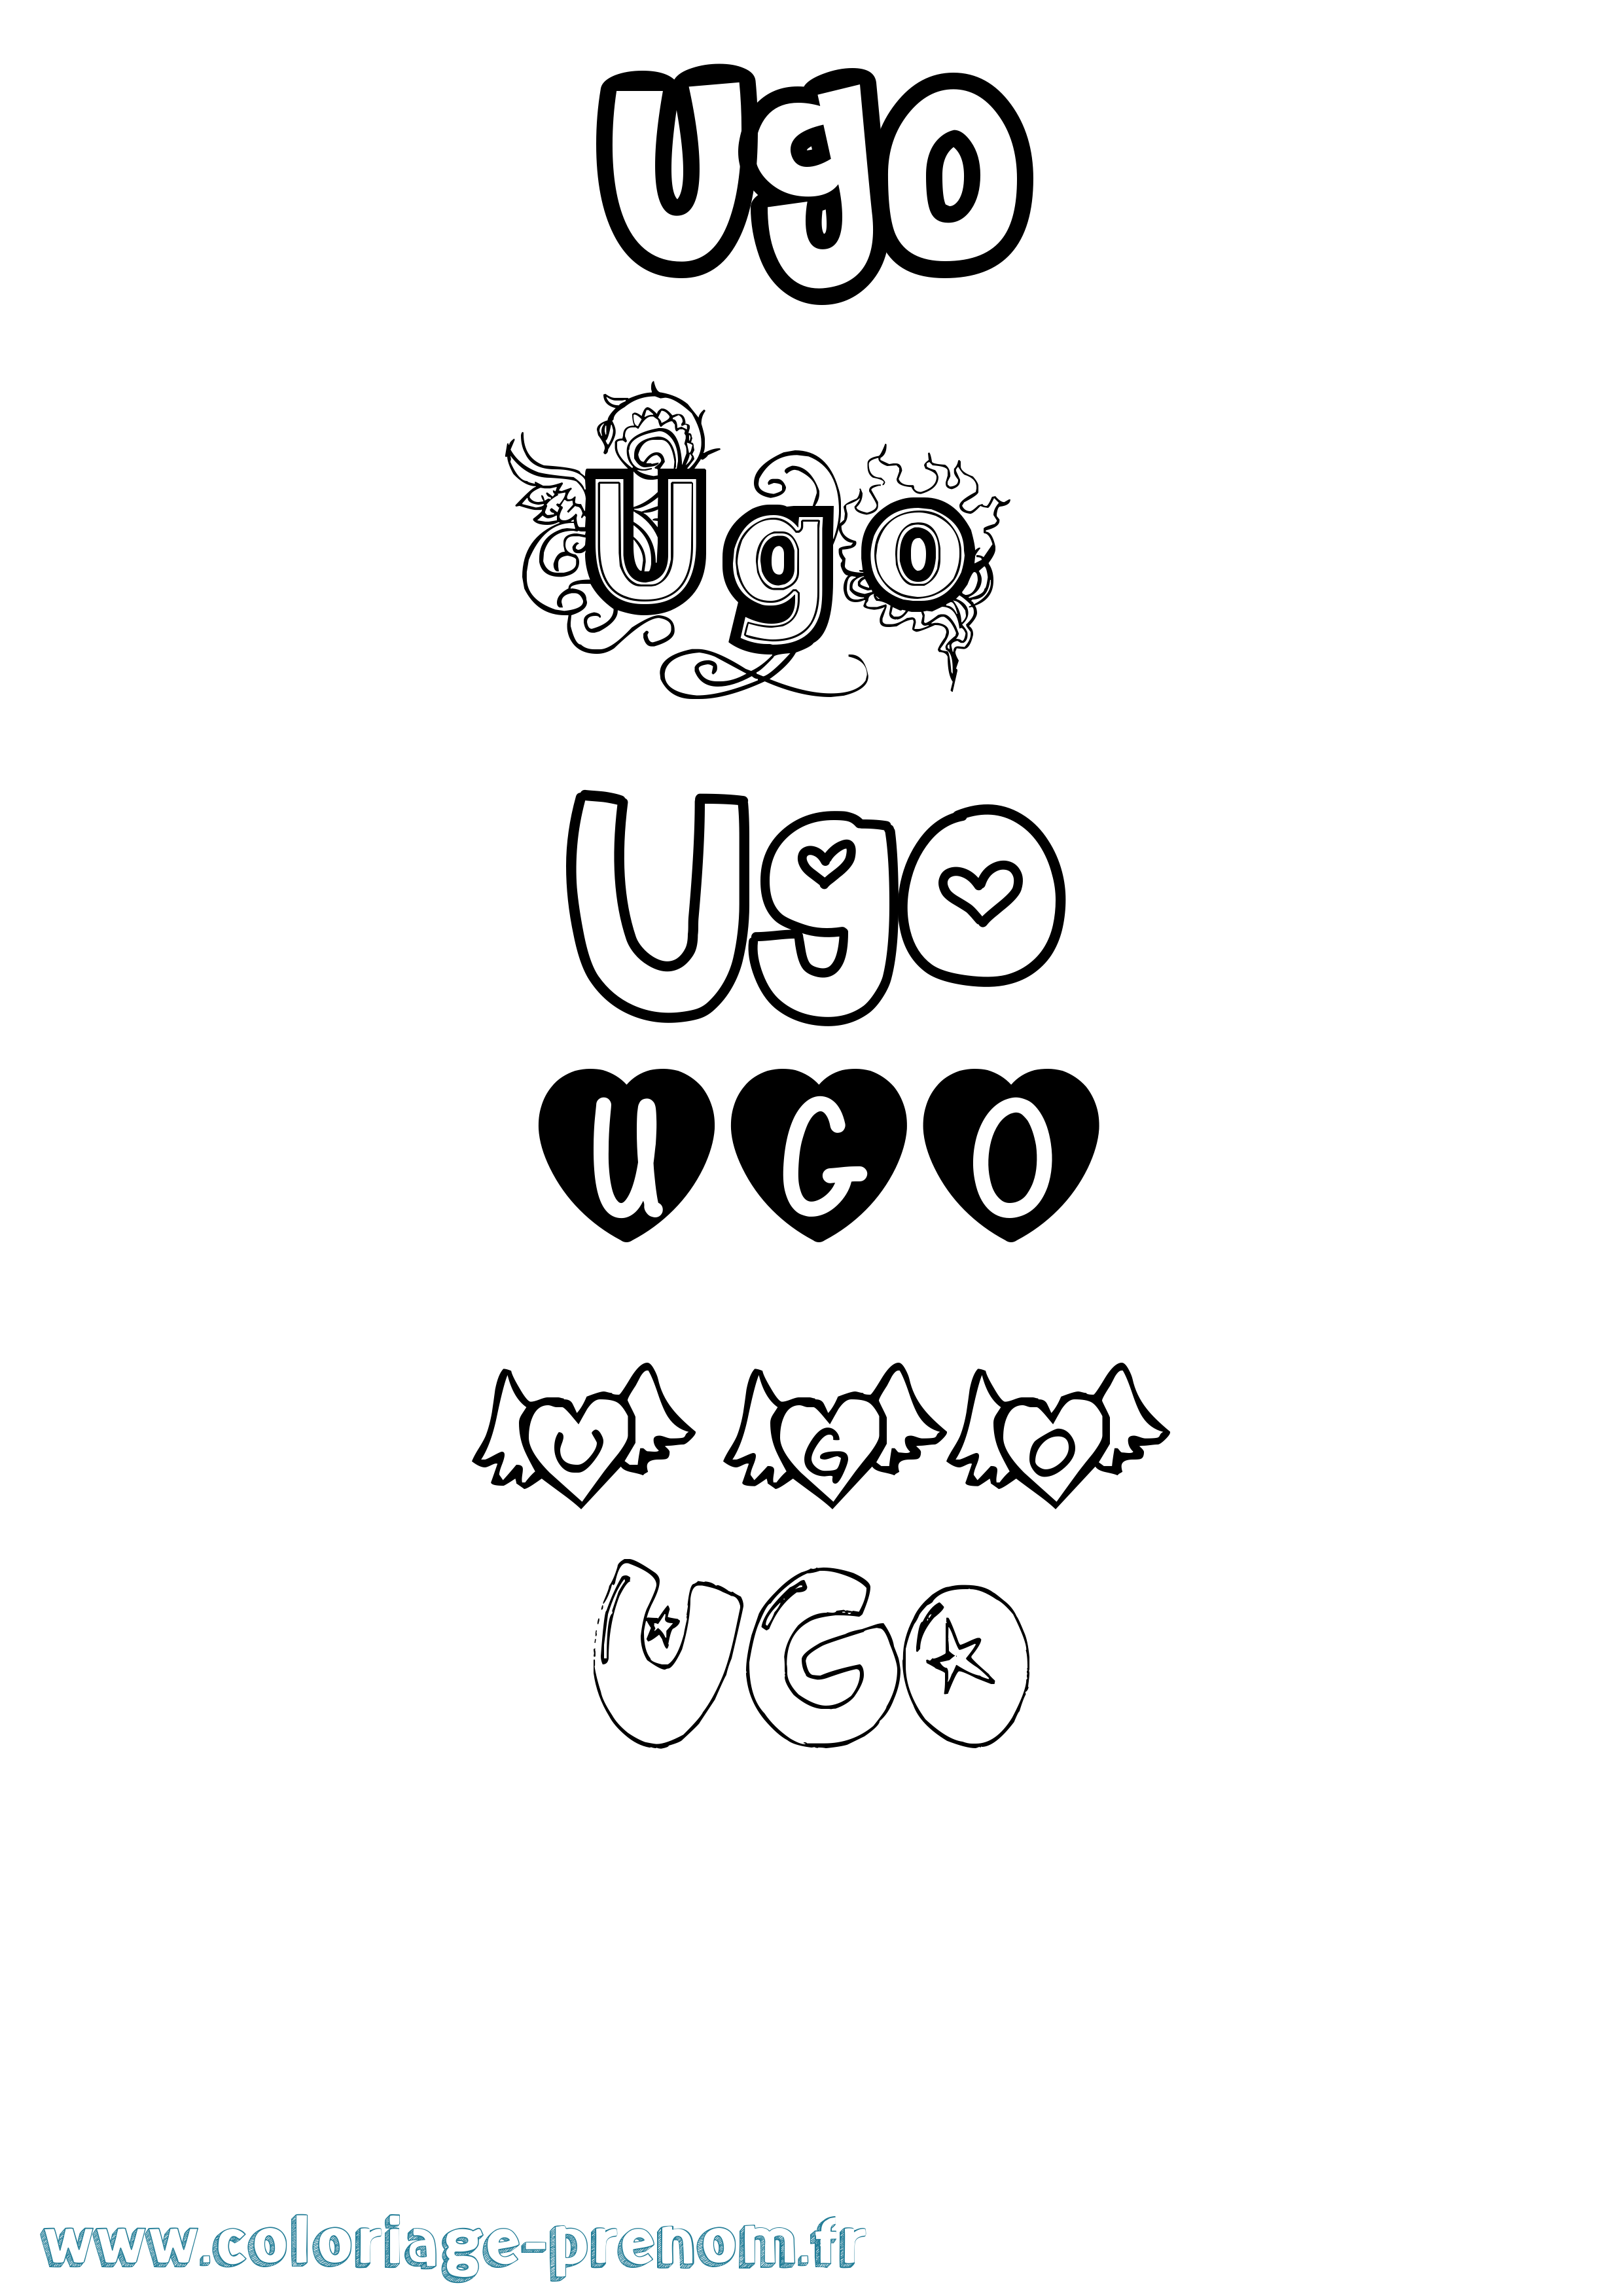 Coloriage prénom Ugo